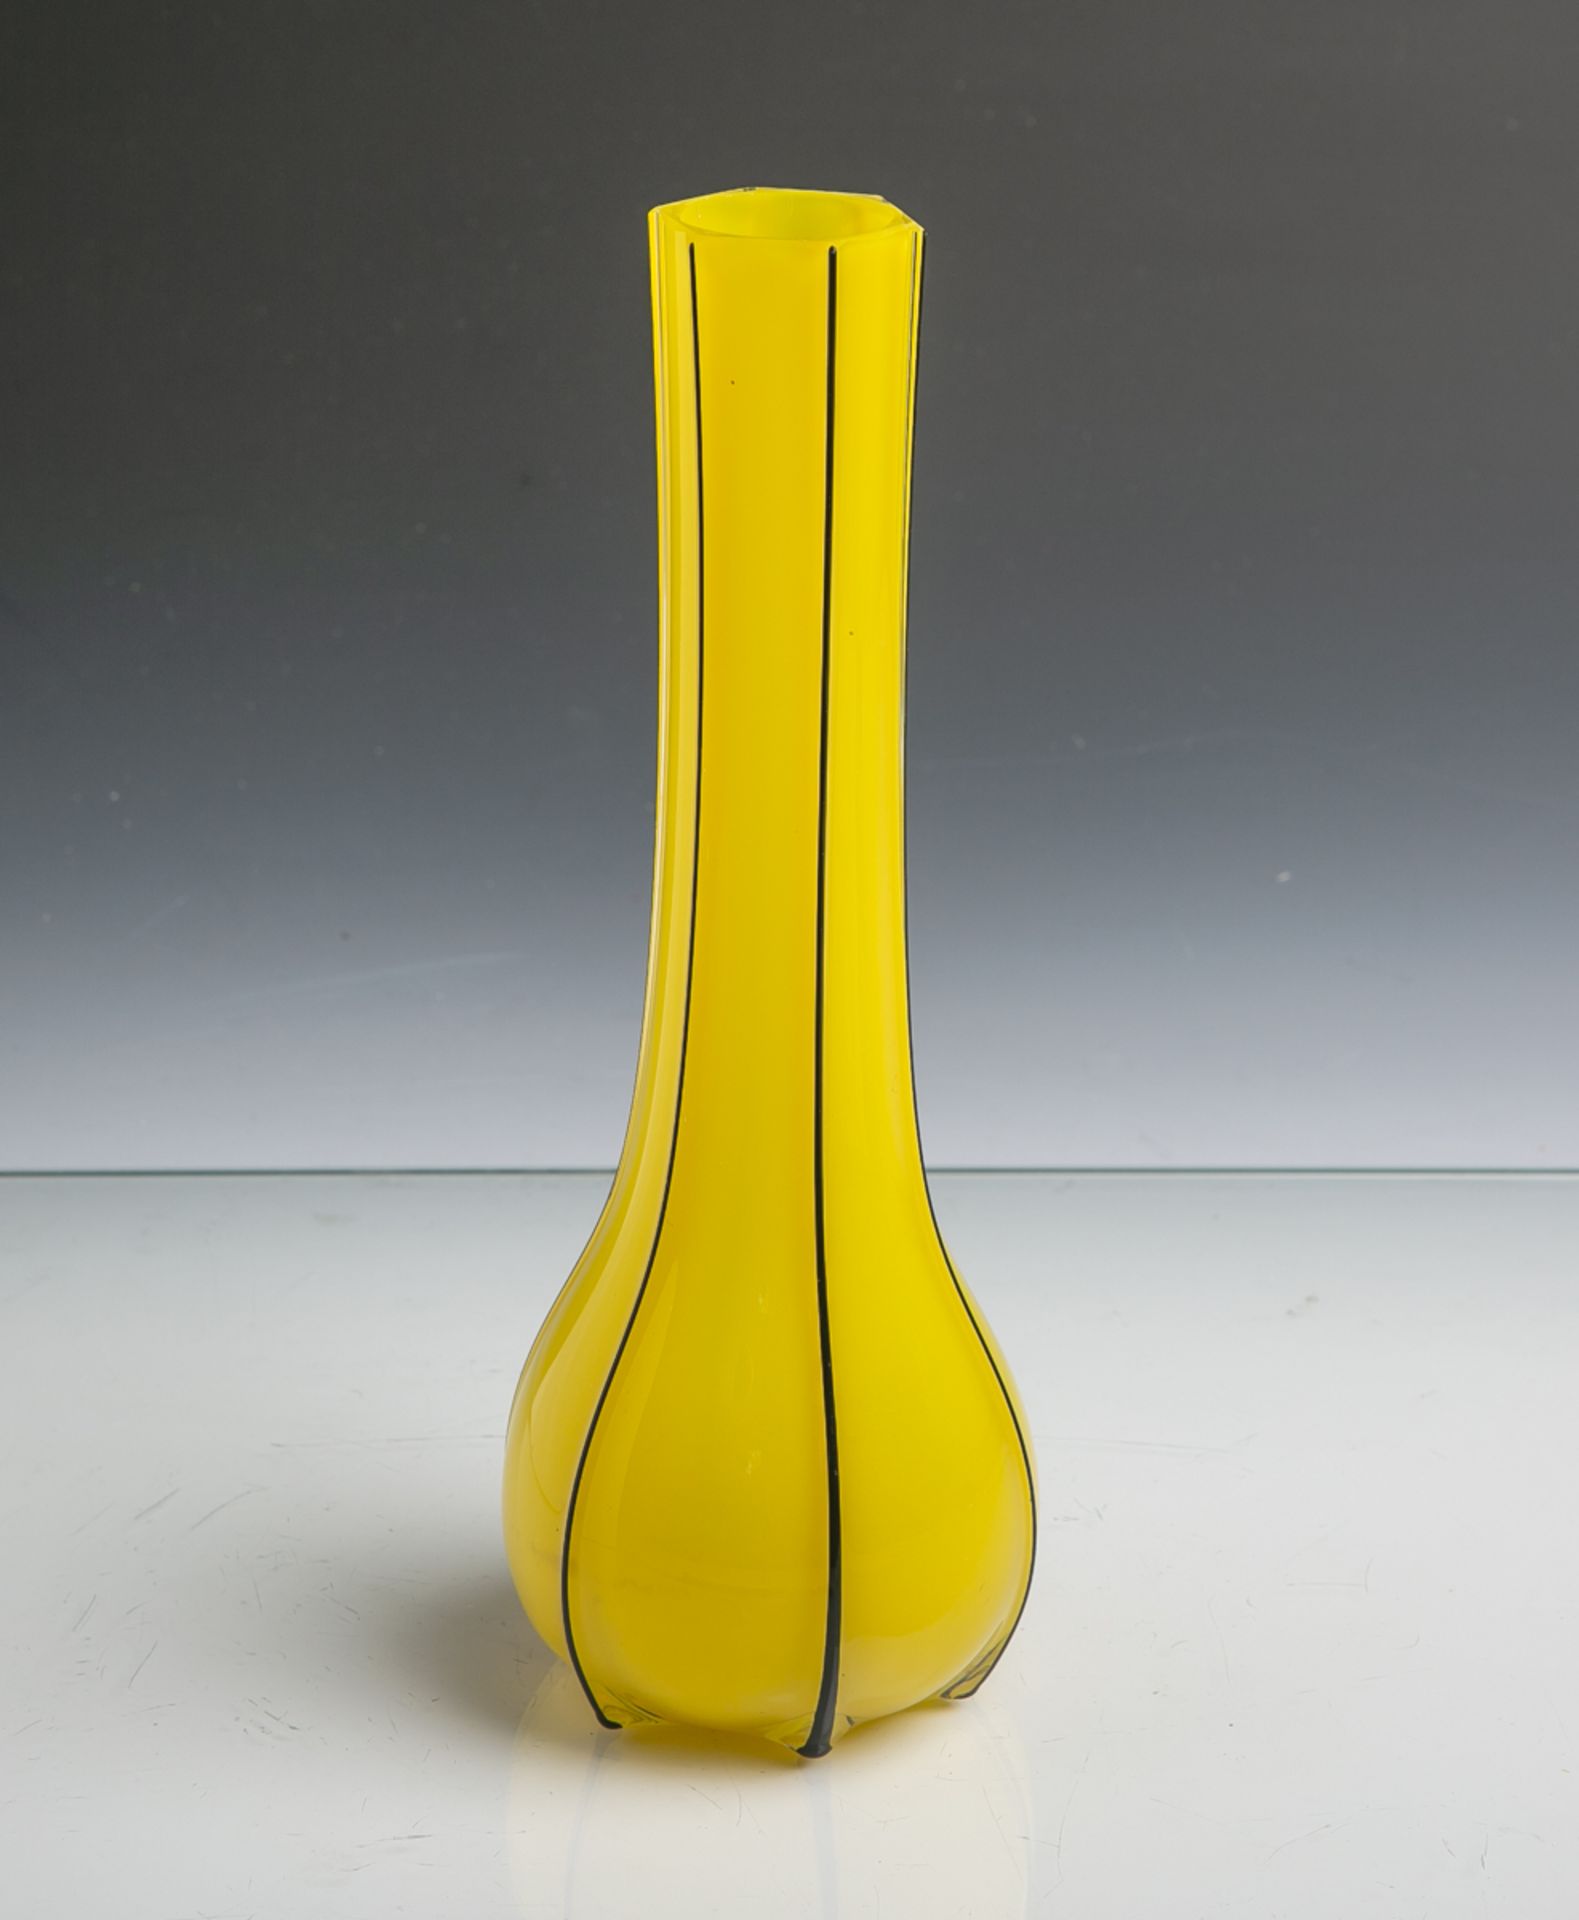 Jugendstilvase (1920er Jahre), doppelschichtiges Glas (durchsichtig / gelb) m. bemaltenlanggezogenen